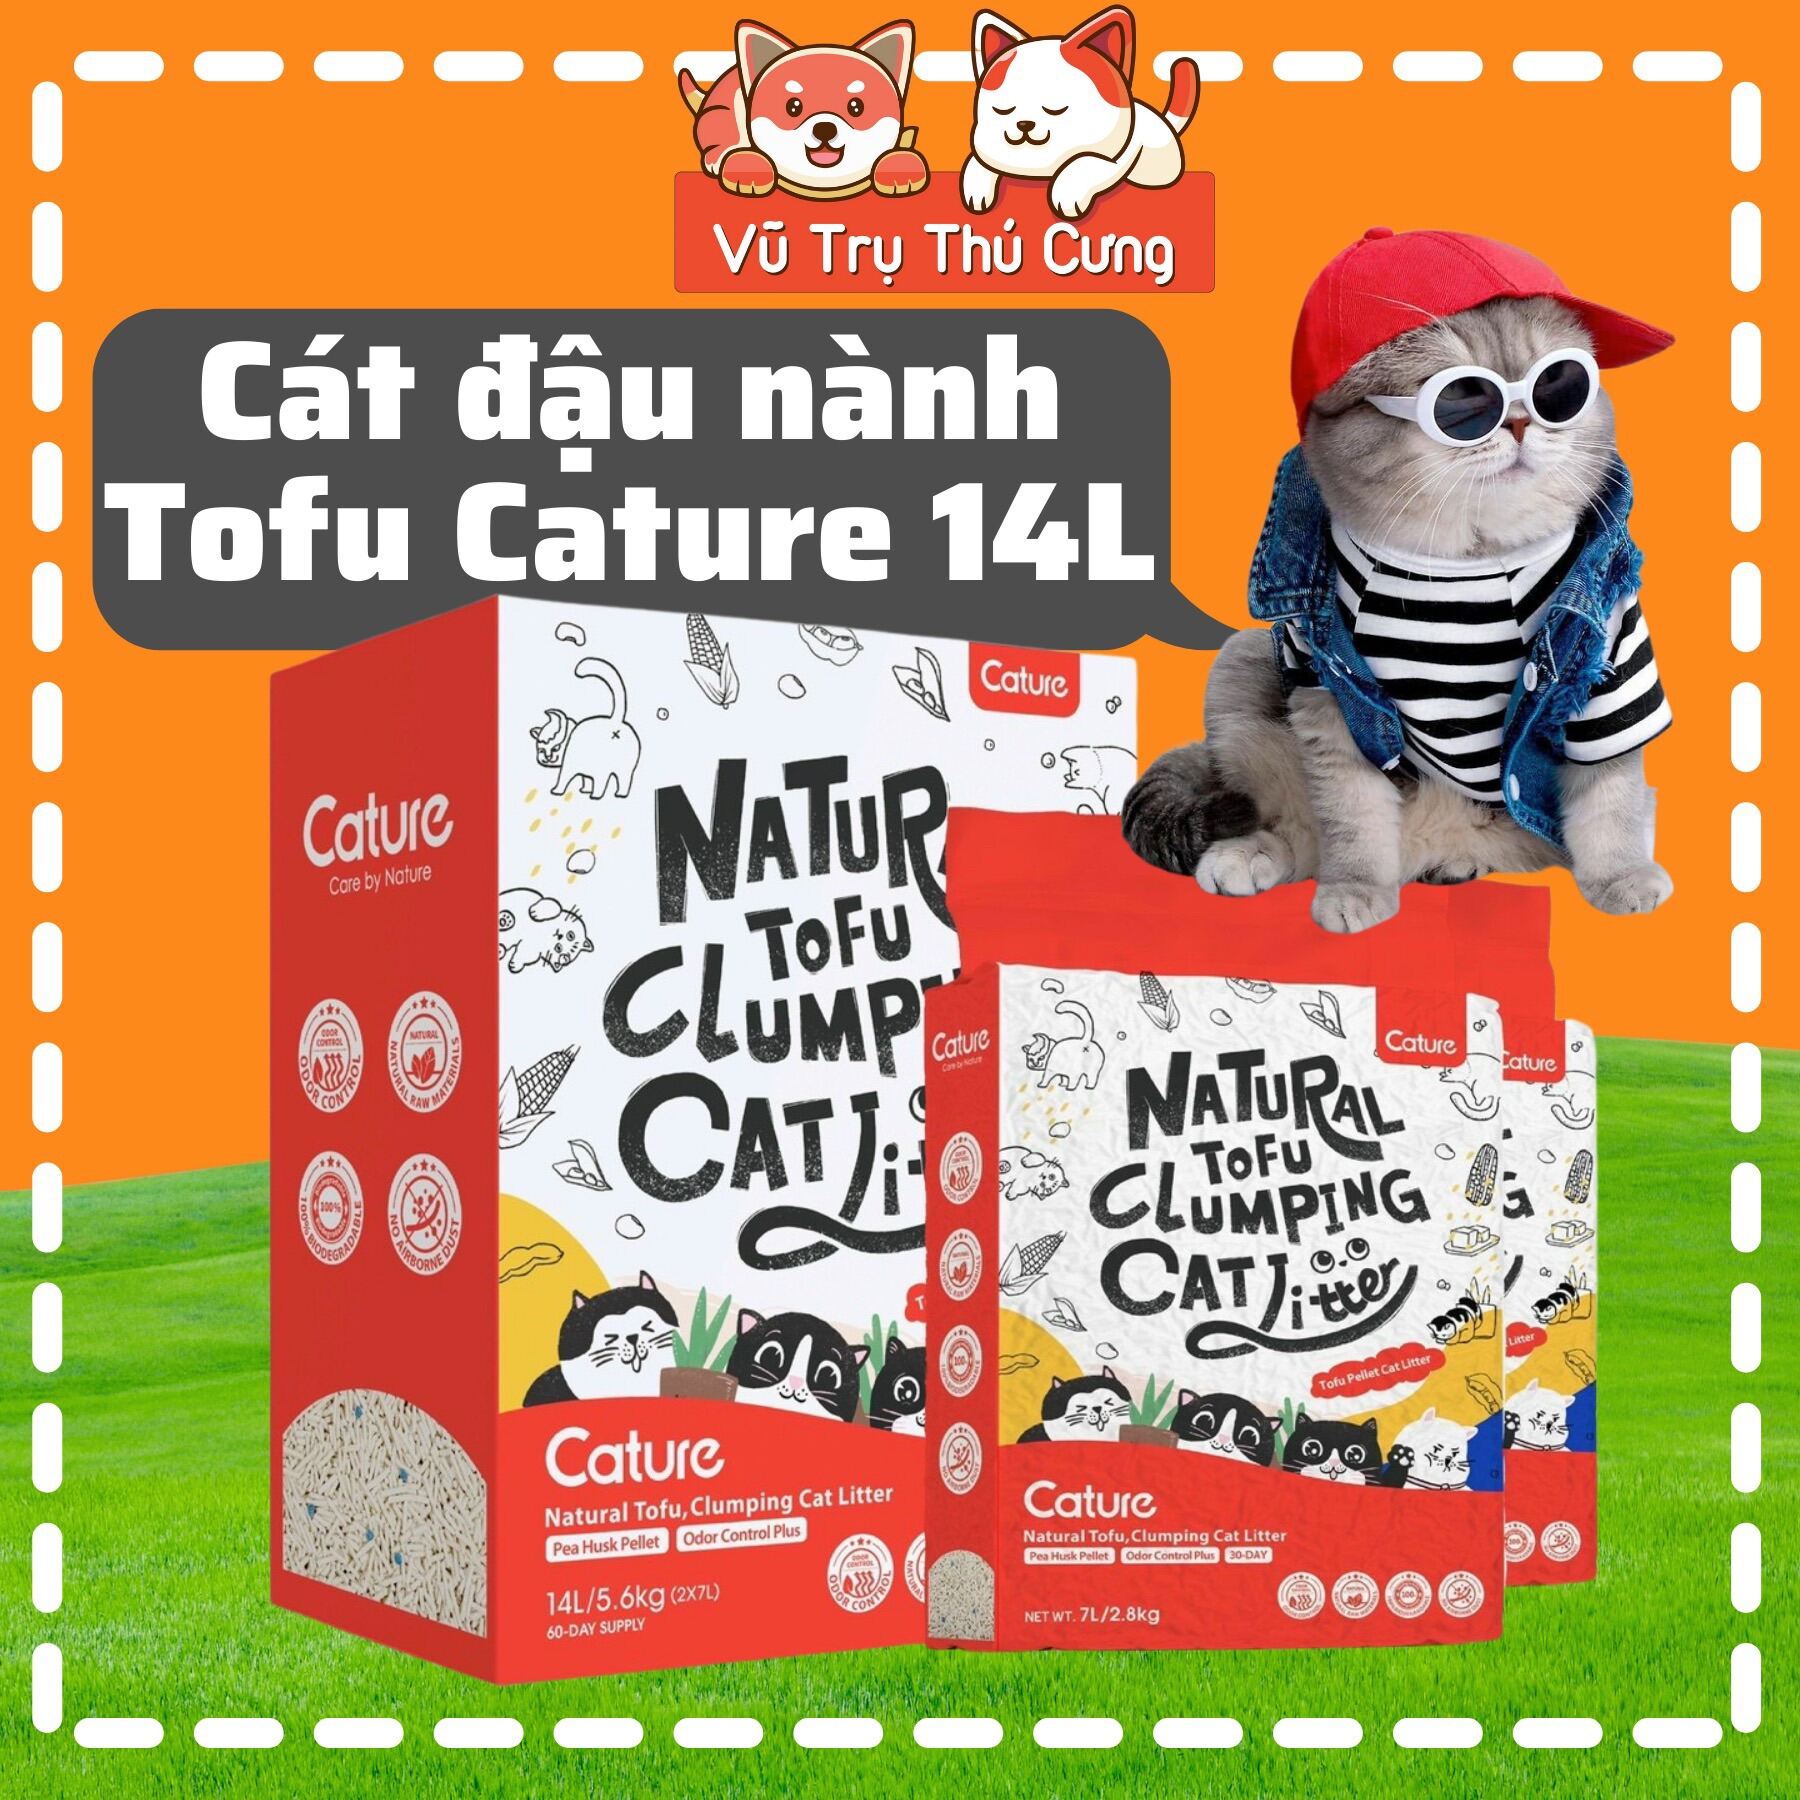 Cát vệ sinh cho Mèo, Cát đậu nành Tofu Cature 14L